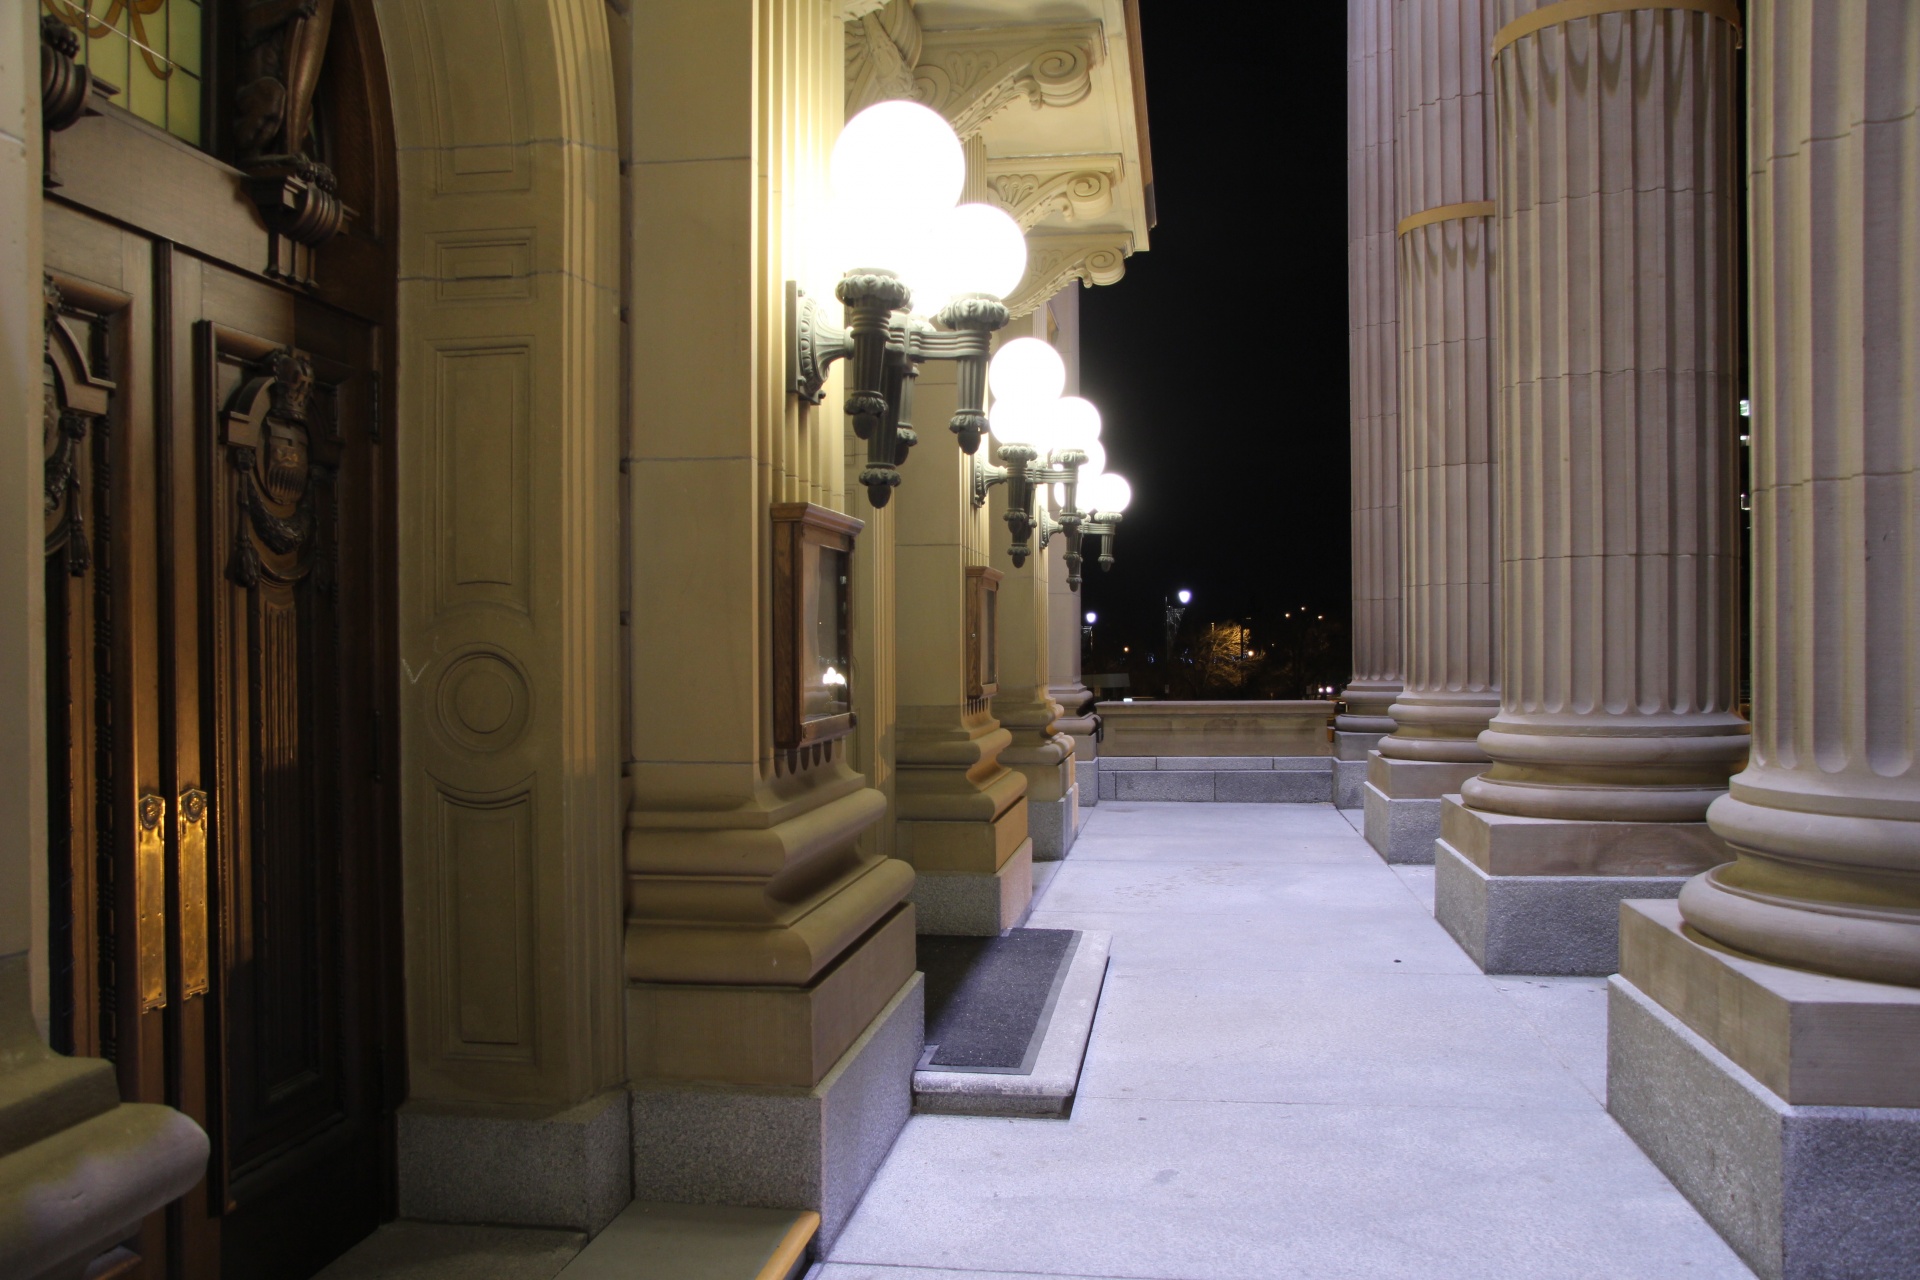 edmonton legislative building free photo